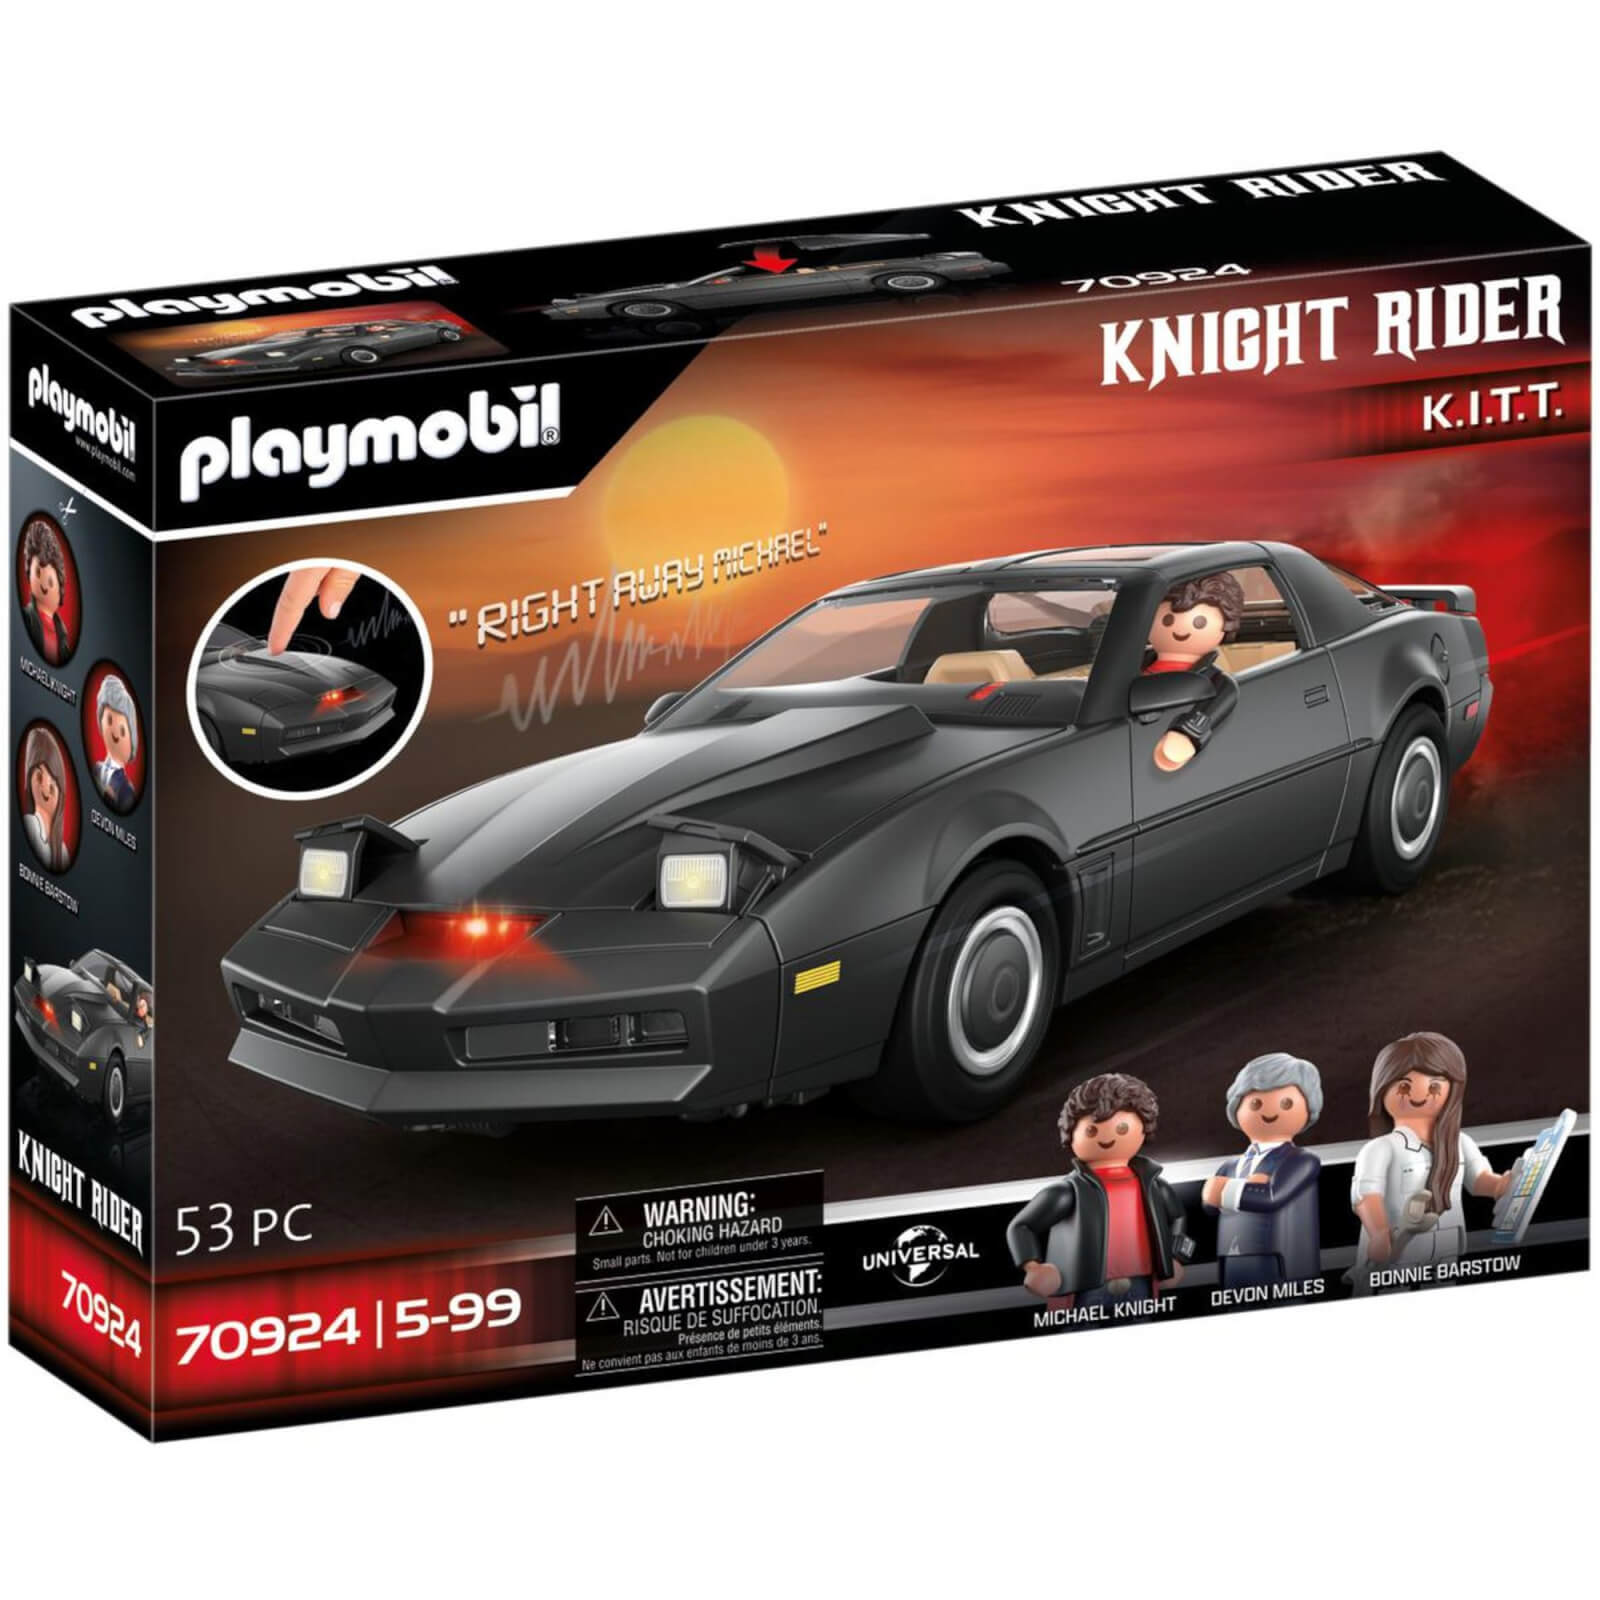 Playmobil Knight Rider   K.I.T.T. (70924)